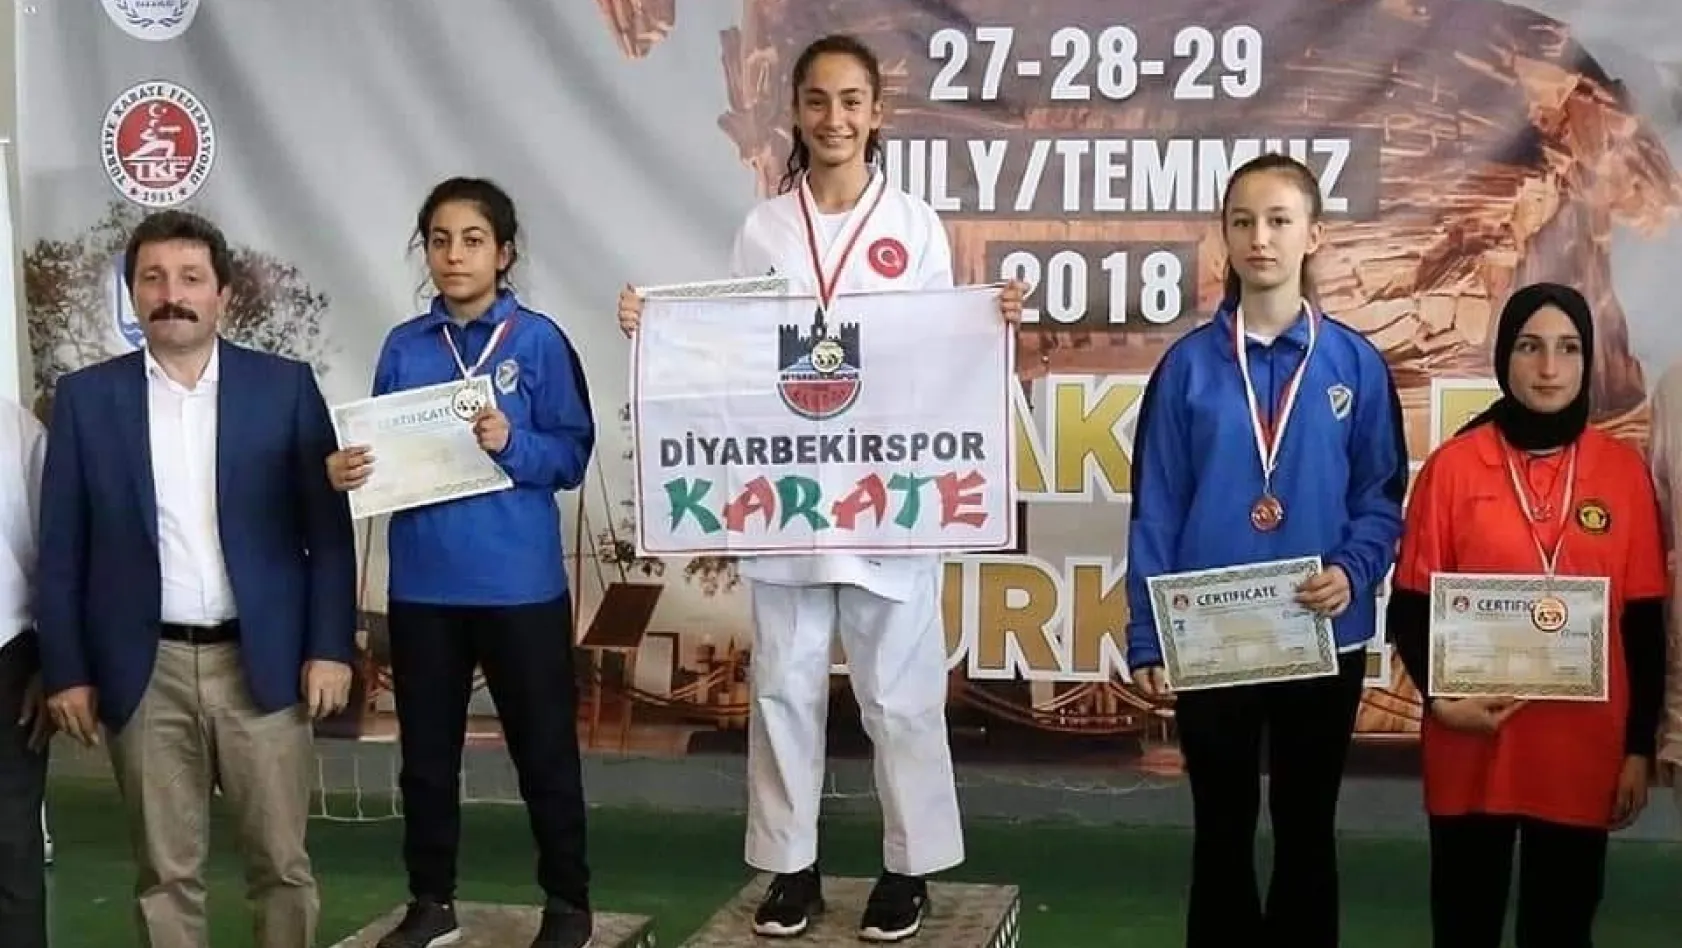 Diyarbakır karate takımından büyük başarı
